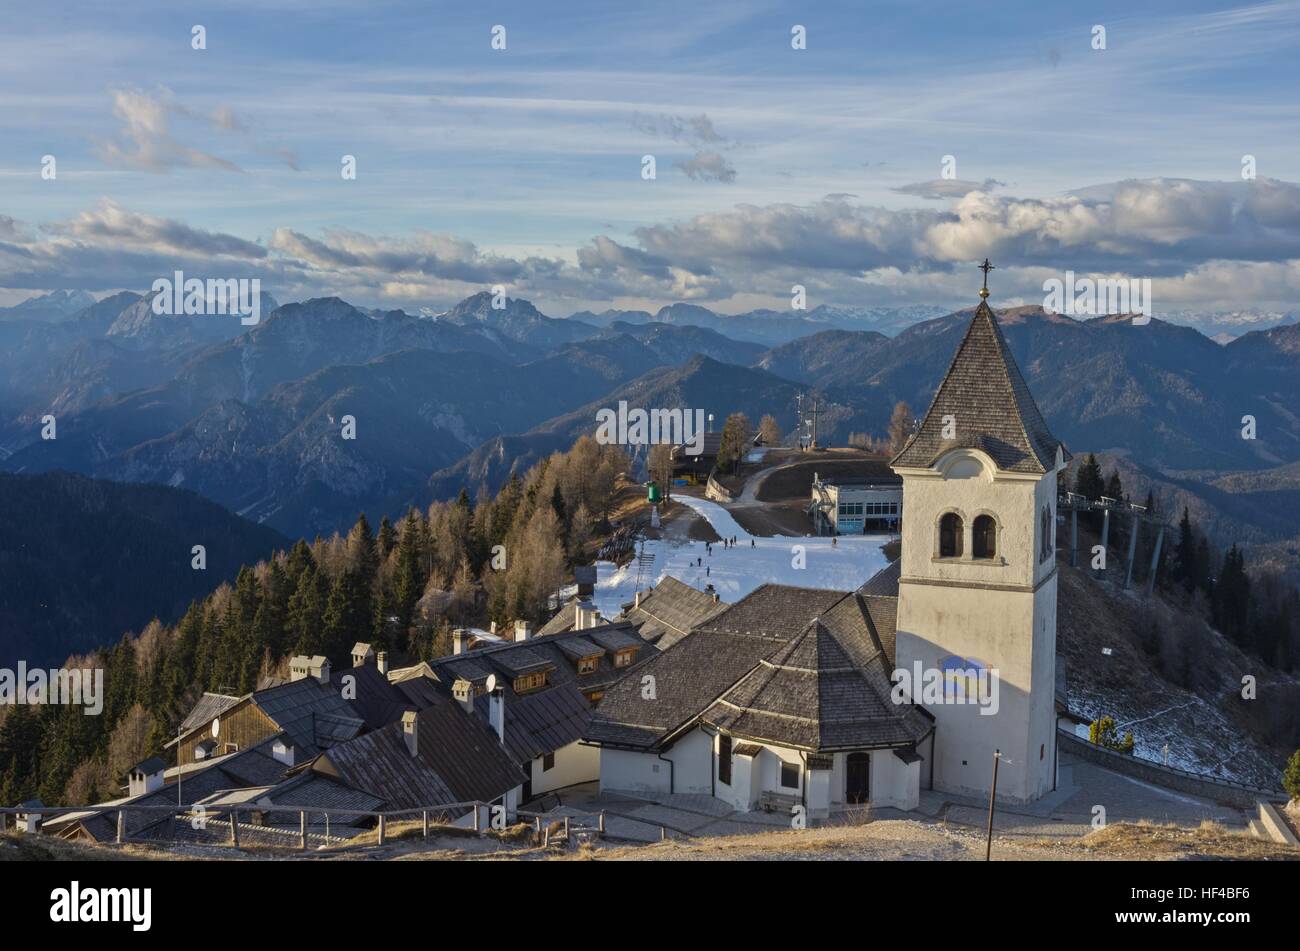 Le village alpin sur le mont Lussari du haut de la montagne Banque D'Images